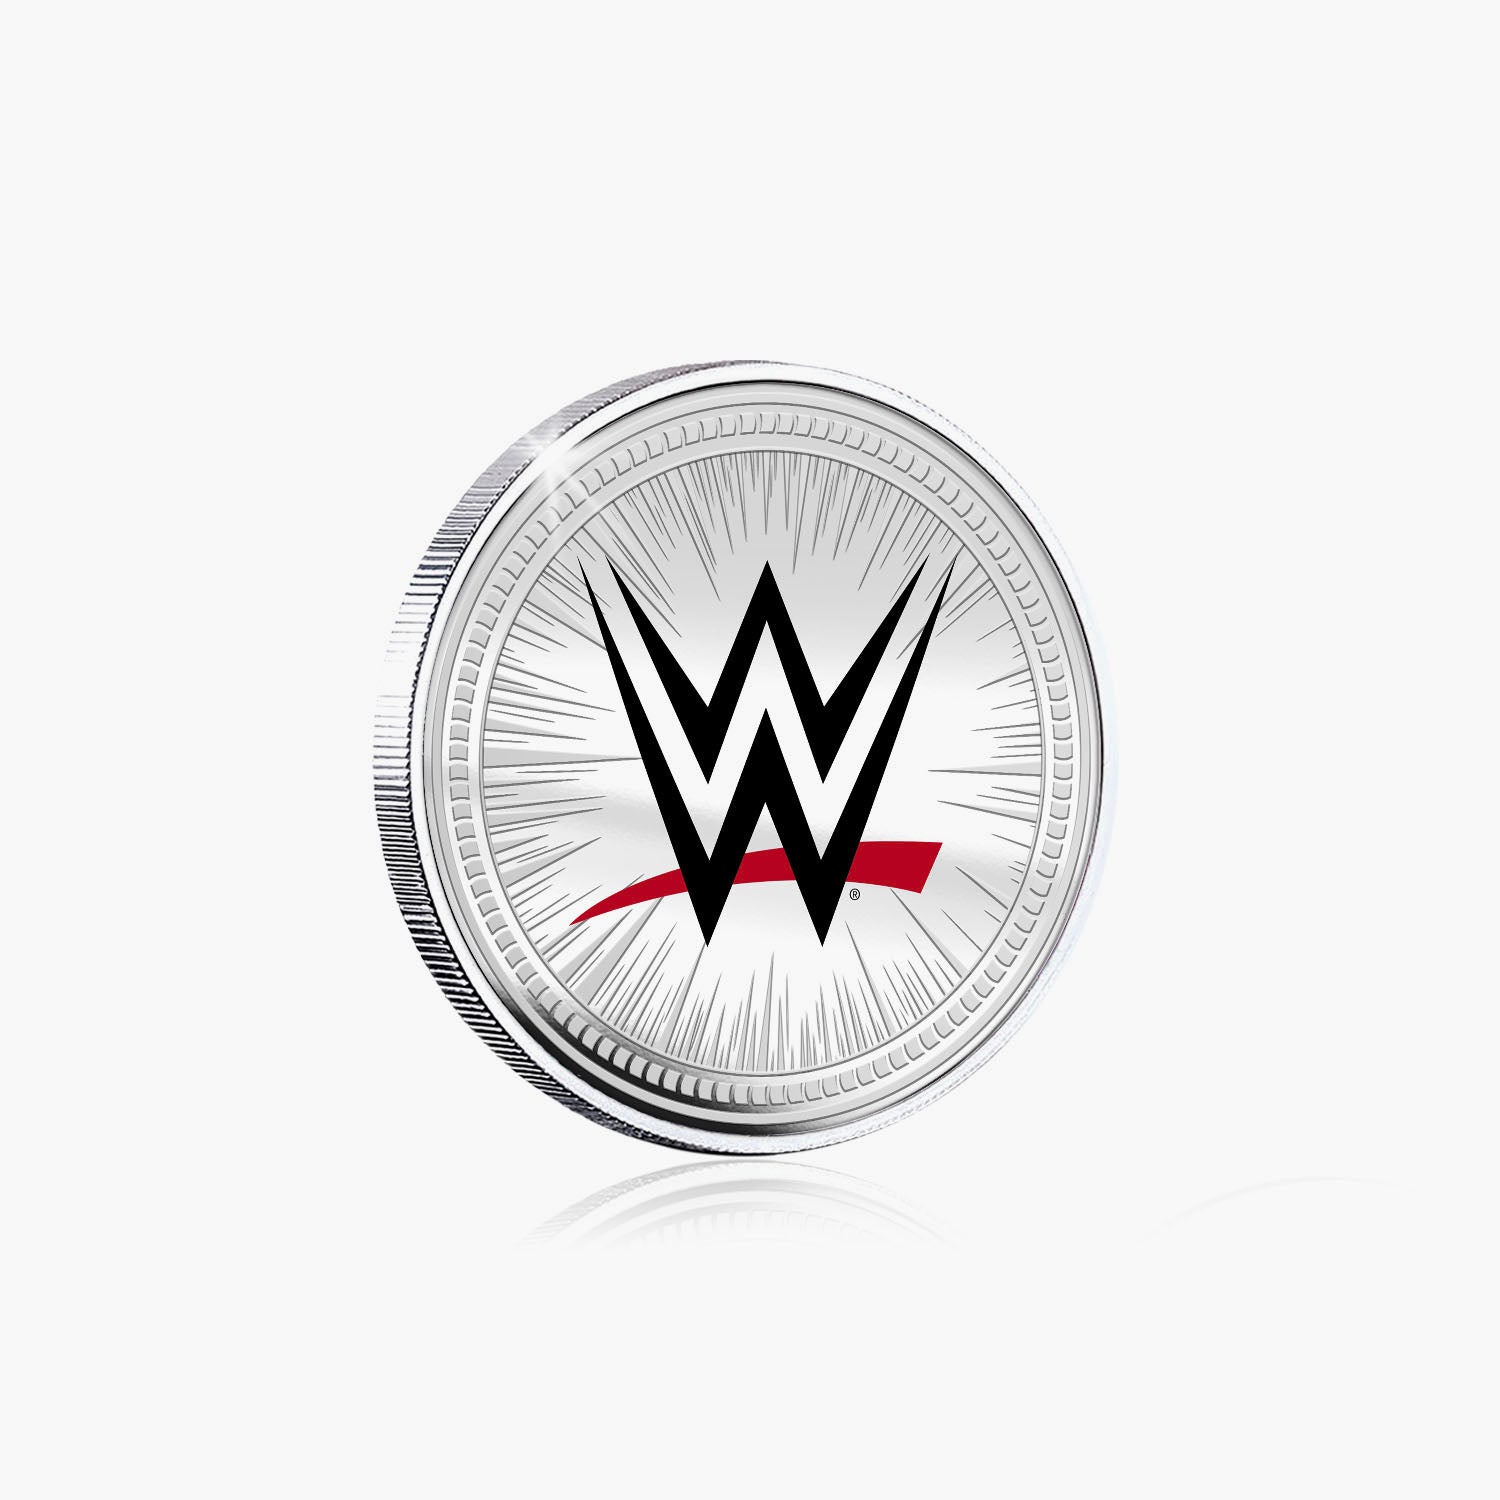 Collection commémorative WWE - Scott Steiner - Commémorative plaquée argent 32 mm